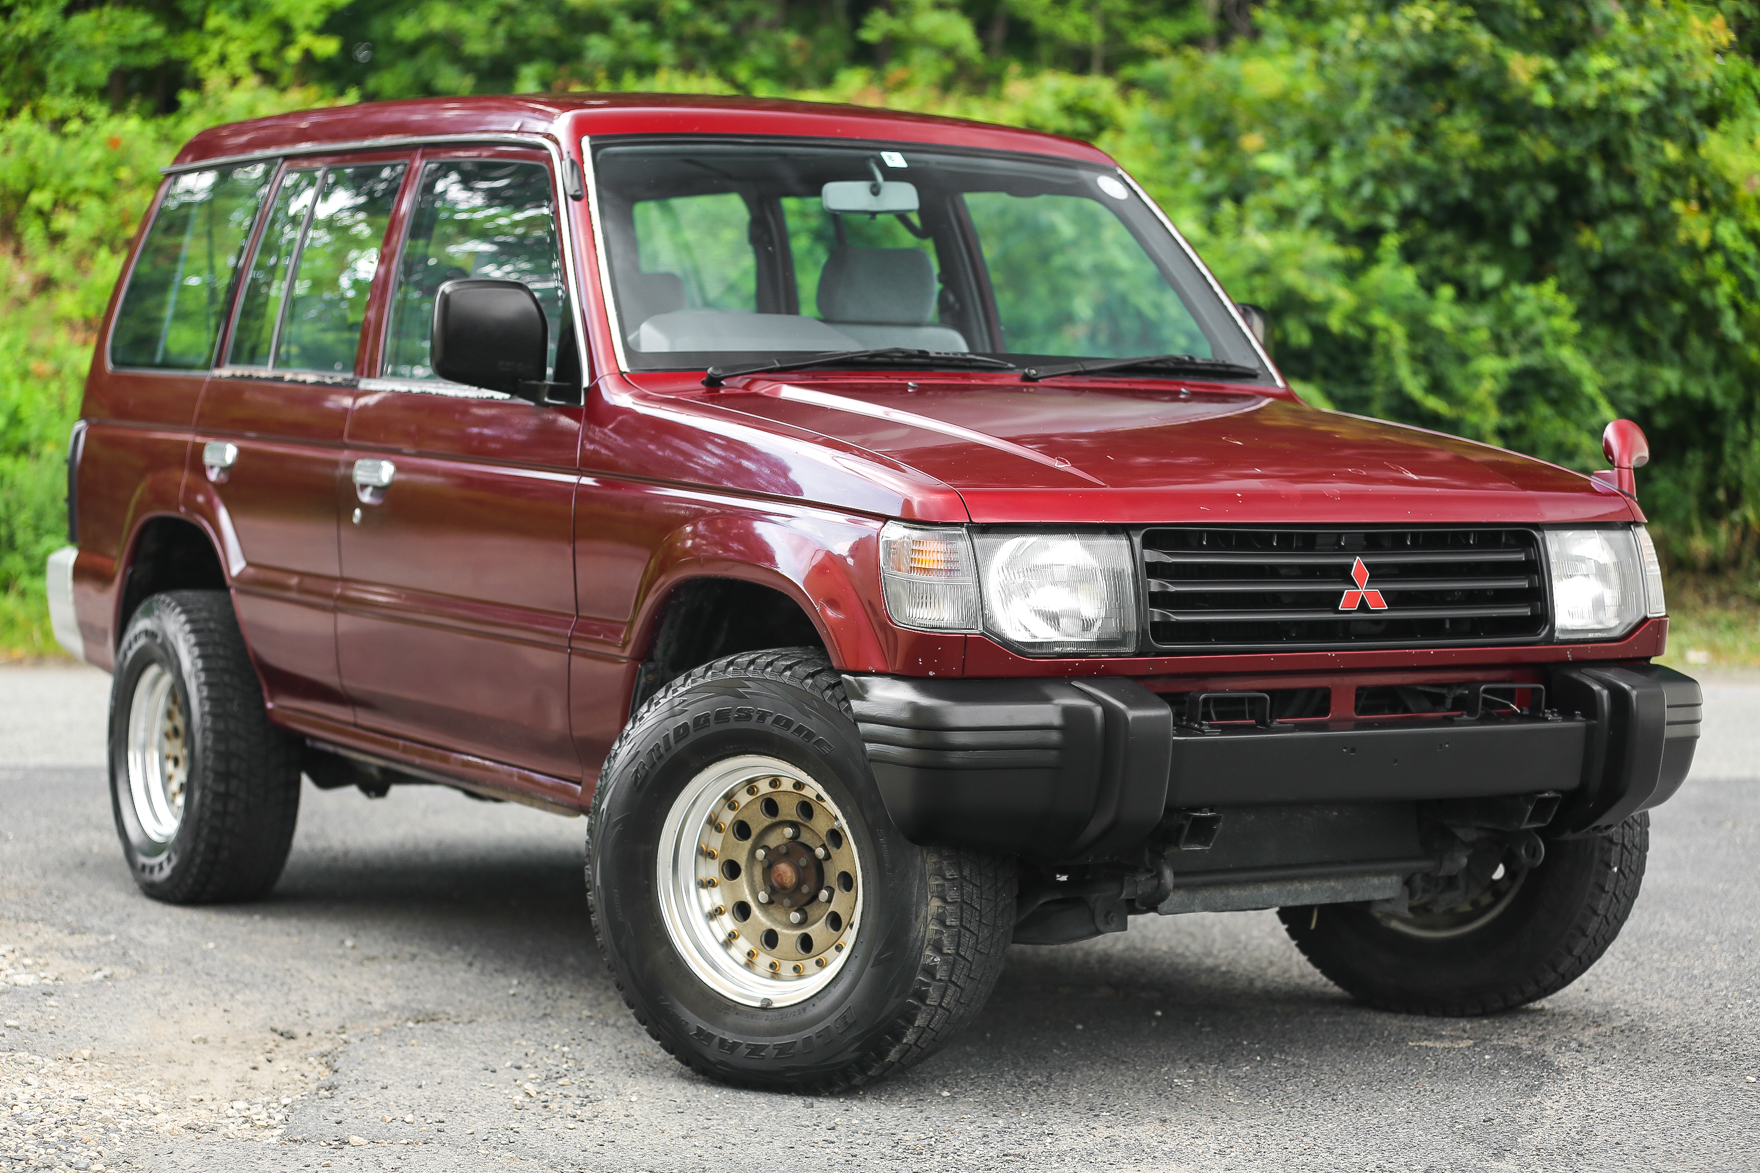 1993 Mitsubishi Pajero 4WD - $13,995